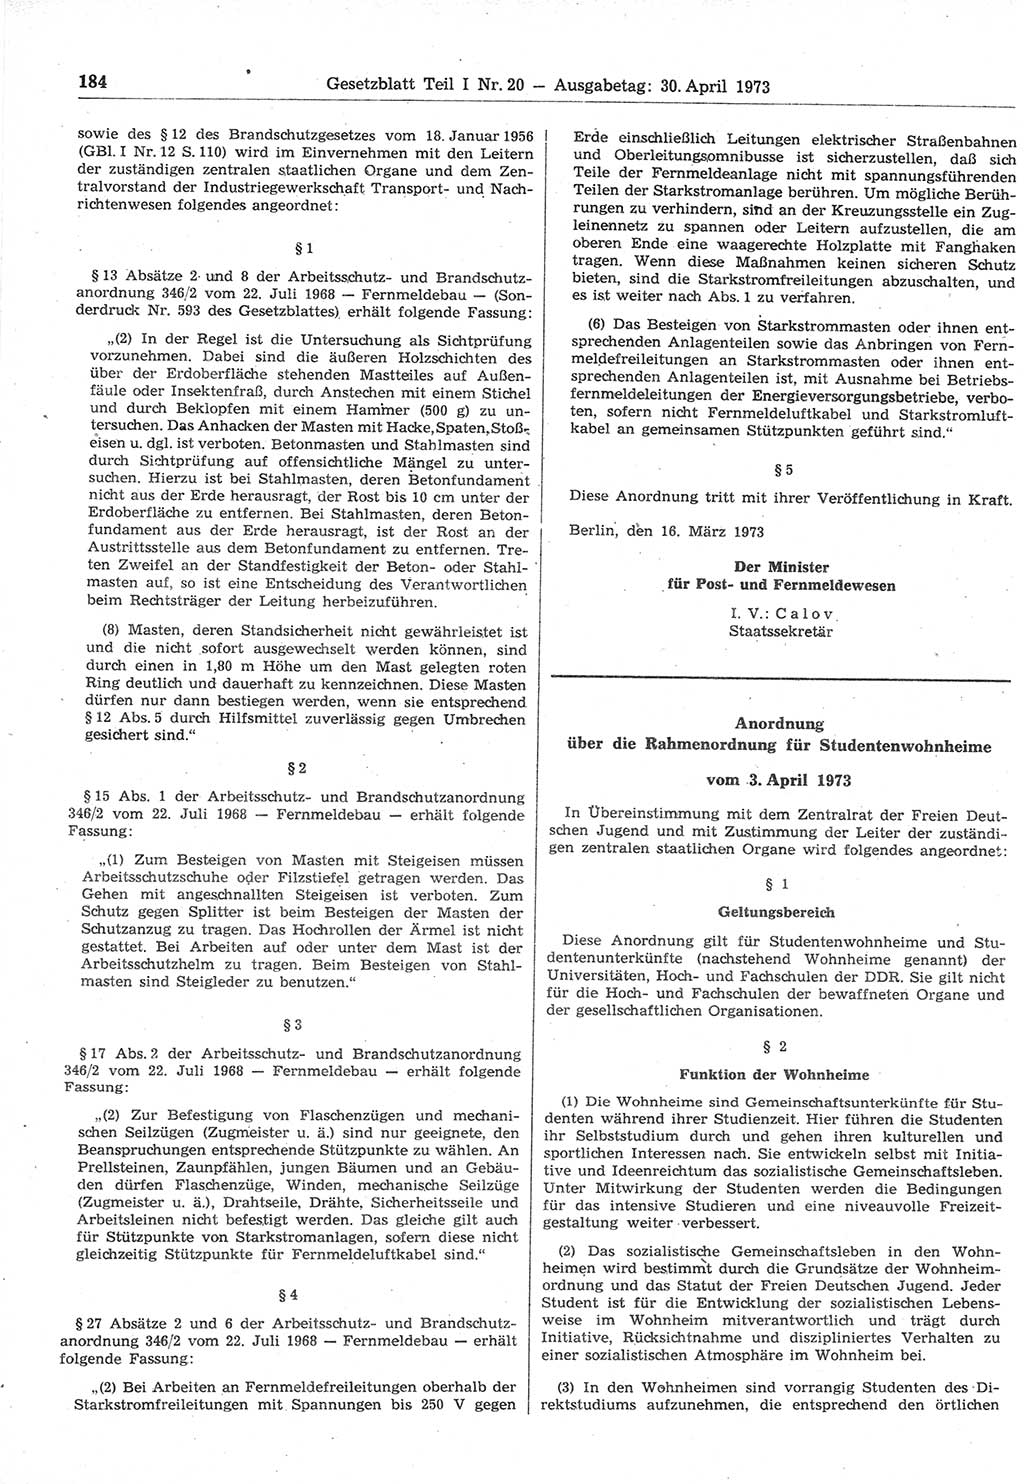 Gesetzblatt (GBl.) der Deutschen Demokratischen Republik (DDR) Teil Ⅰ 1973, Seite 184 (GBl. DDR Ⅰ 1973, S. 184)